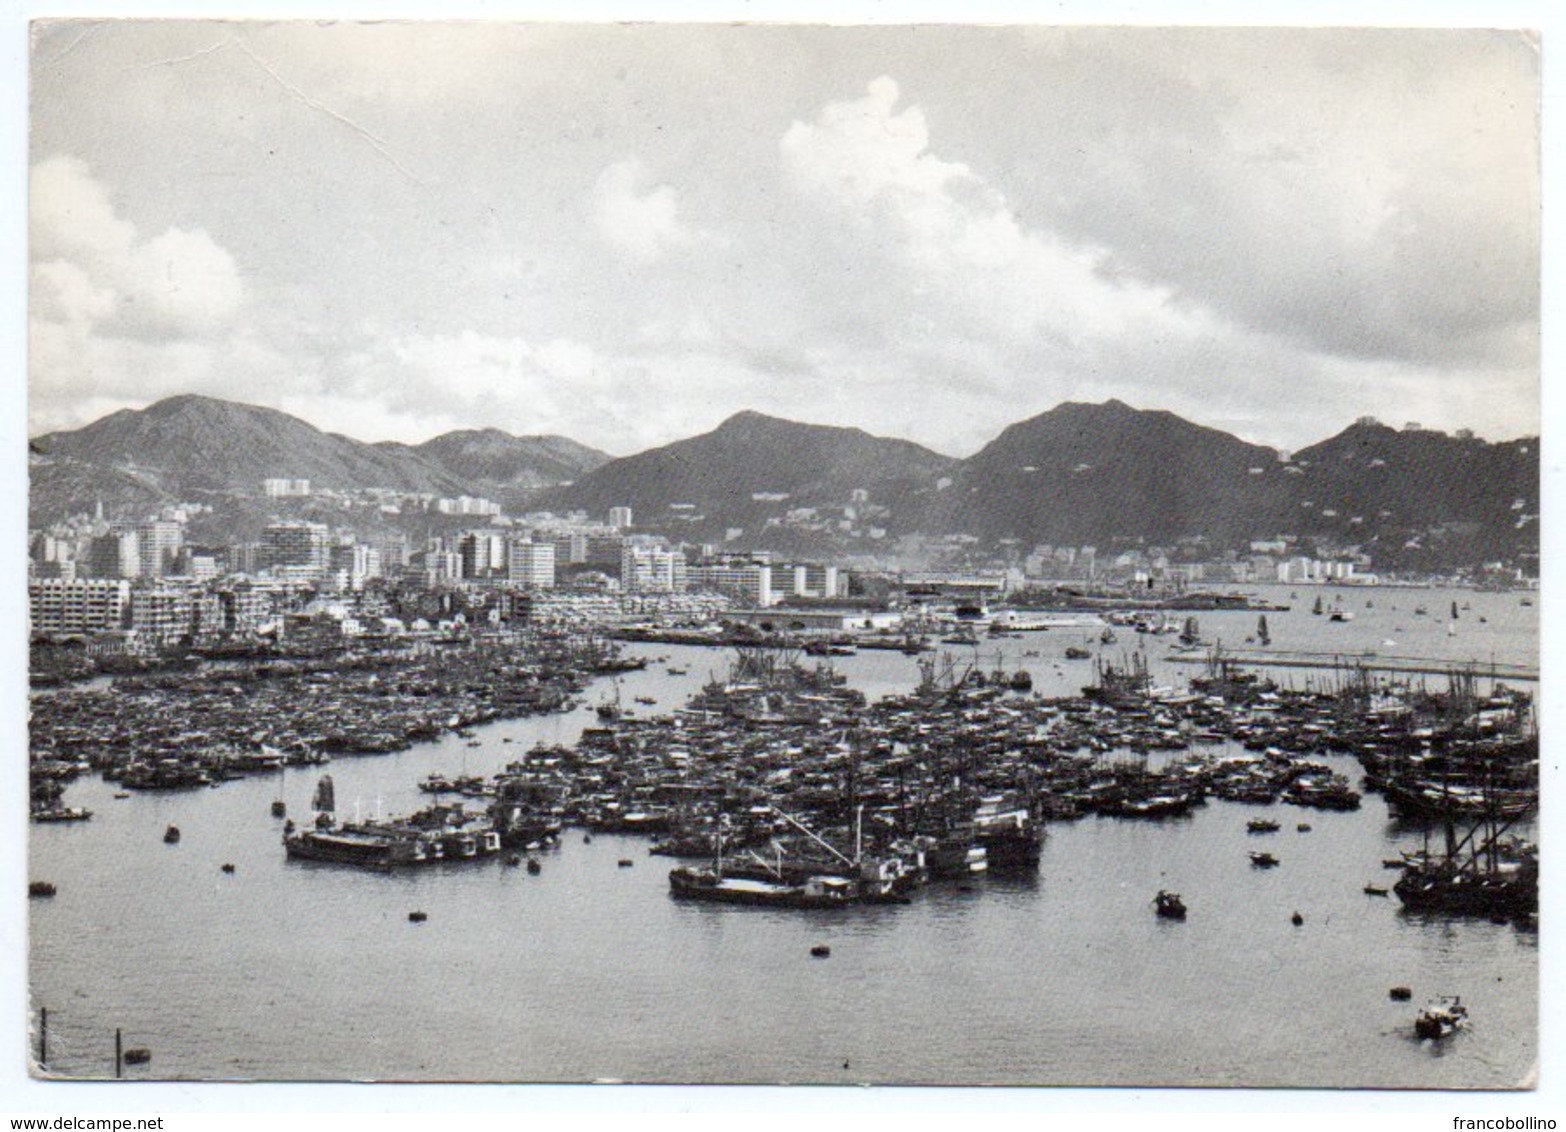 HONG KONG - A VIEW OF THE BAY -1964 - Cina (Hong Kong)